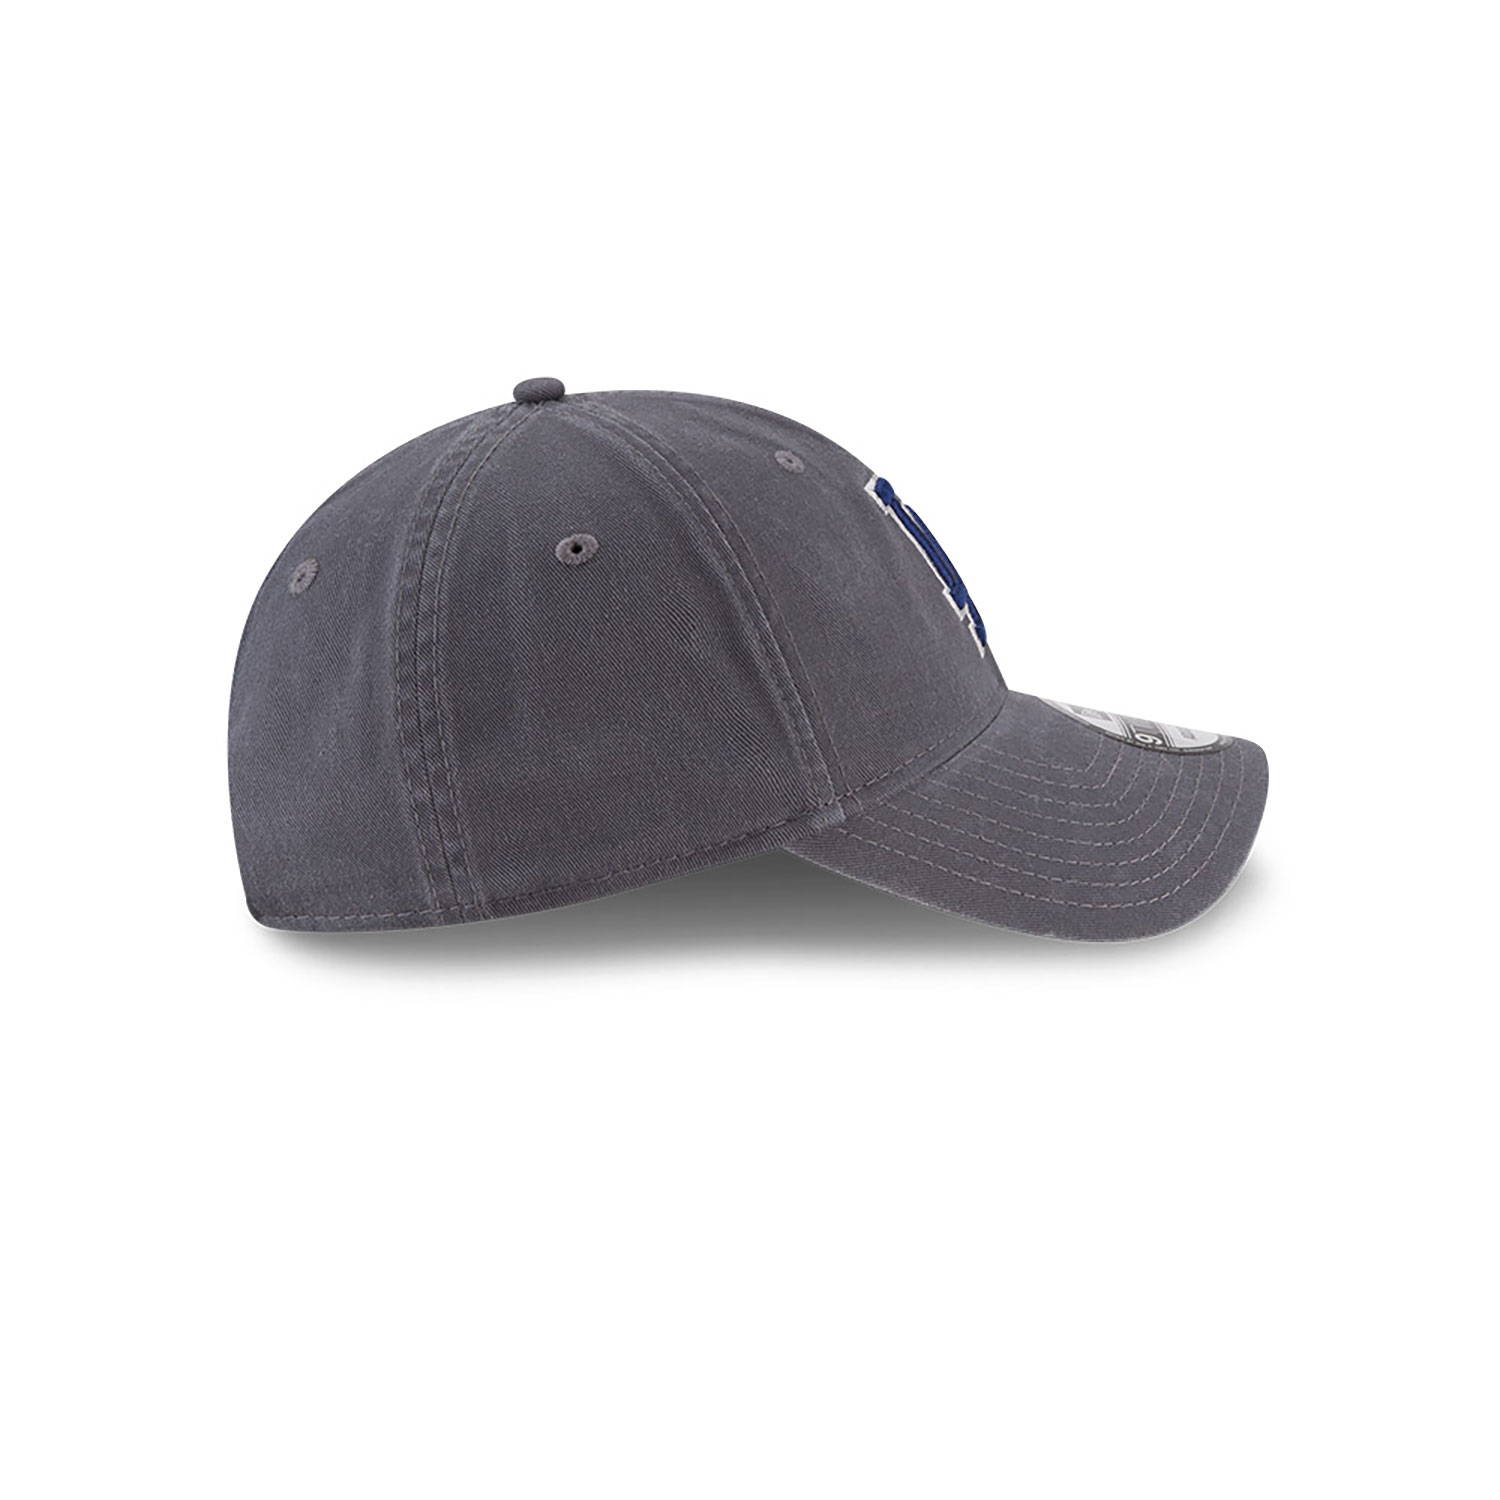 LA Dodgers MLB Core Classic Grey 9TWENTY Adjustable Cap